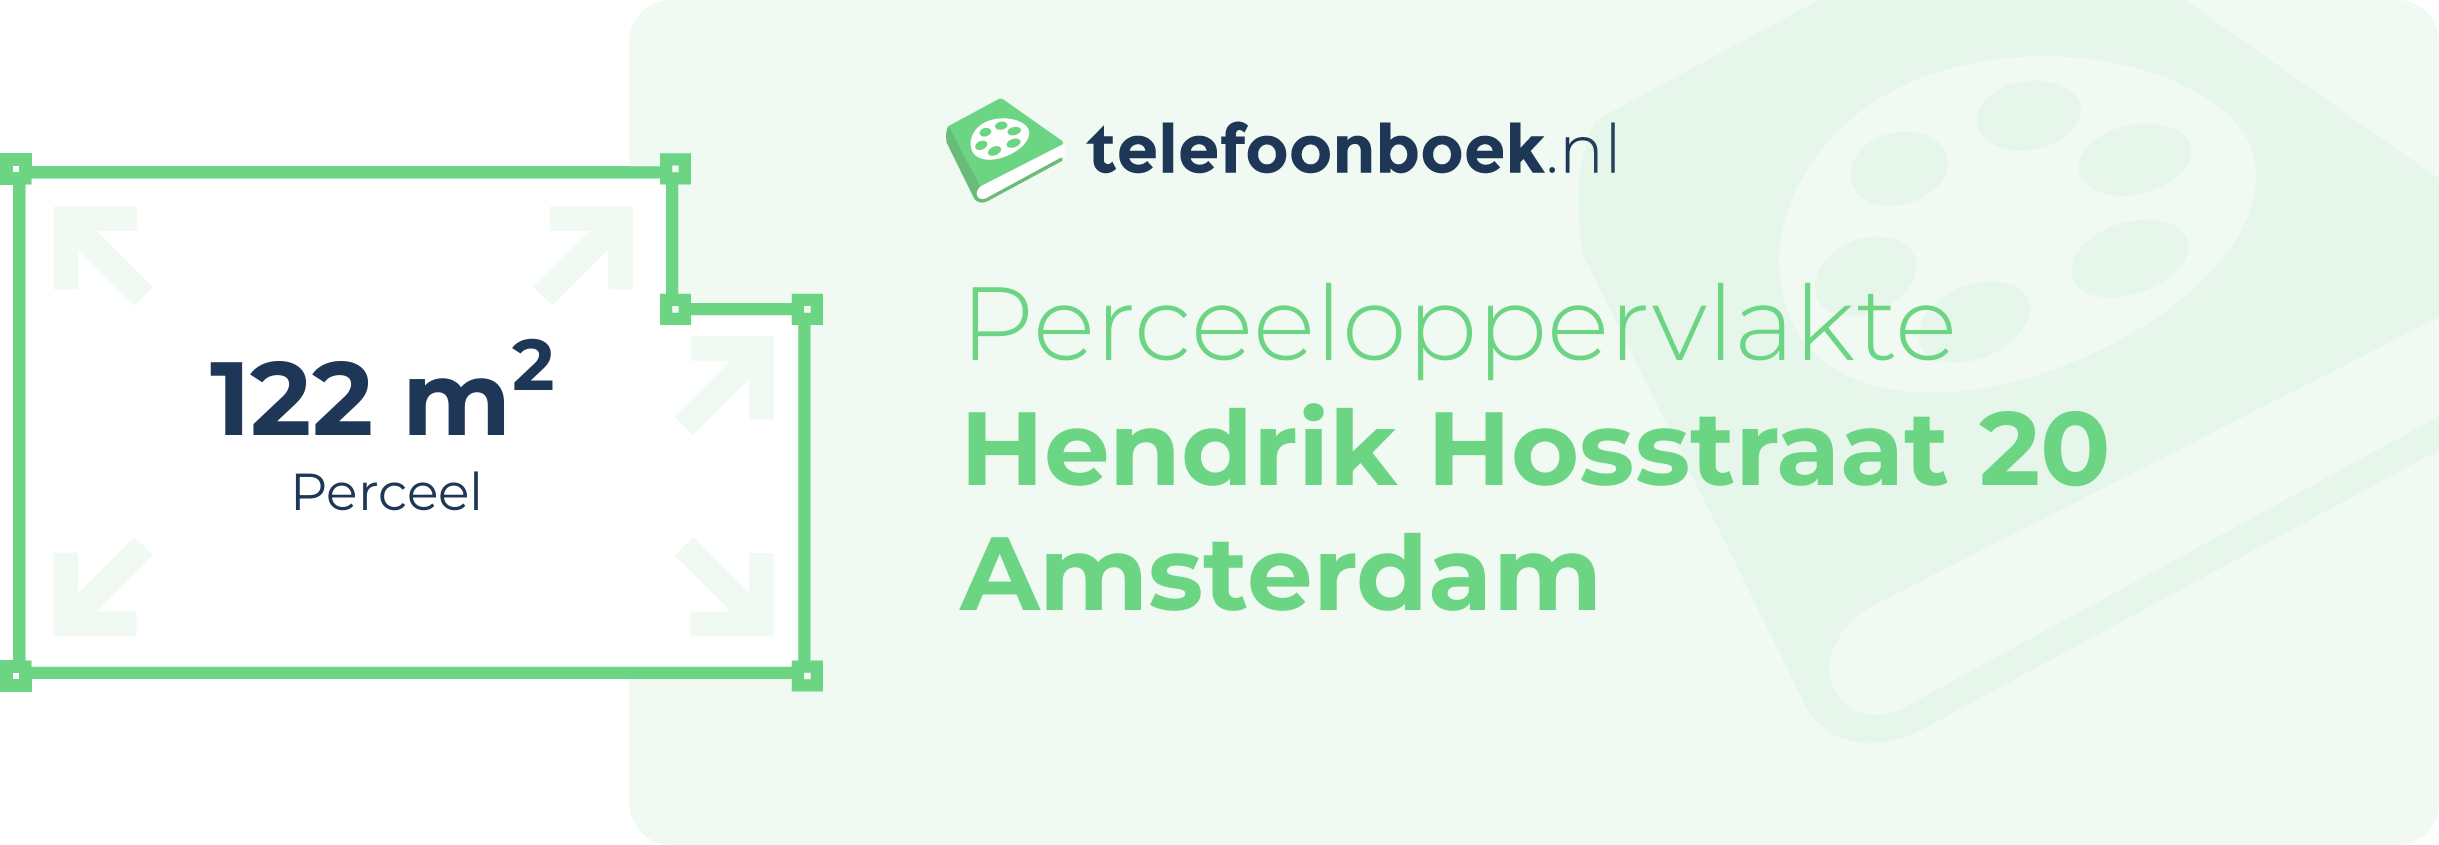 Perceeloppervlakte Hendrik Hosstraat 20 Amsterdam